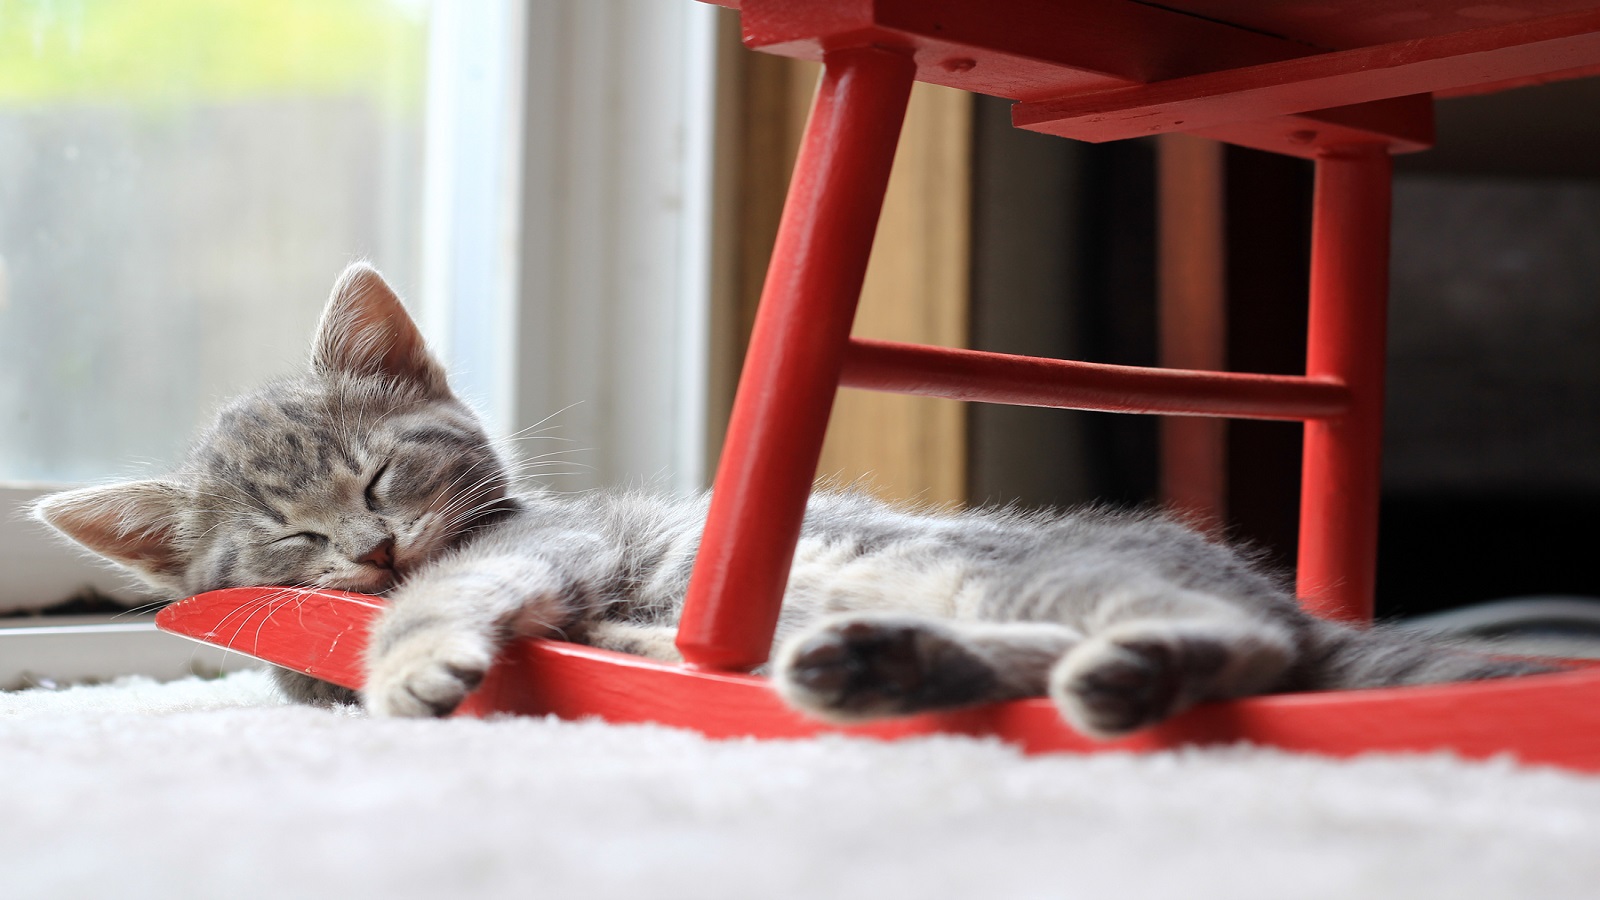 "كتير مهضوم": لماذا يحبون صُور القطط لهذه الدرجة؟